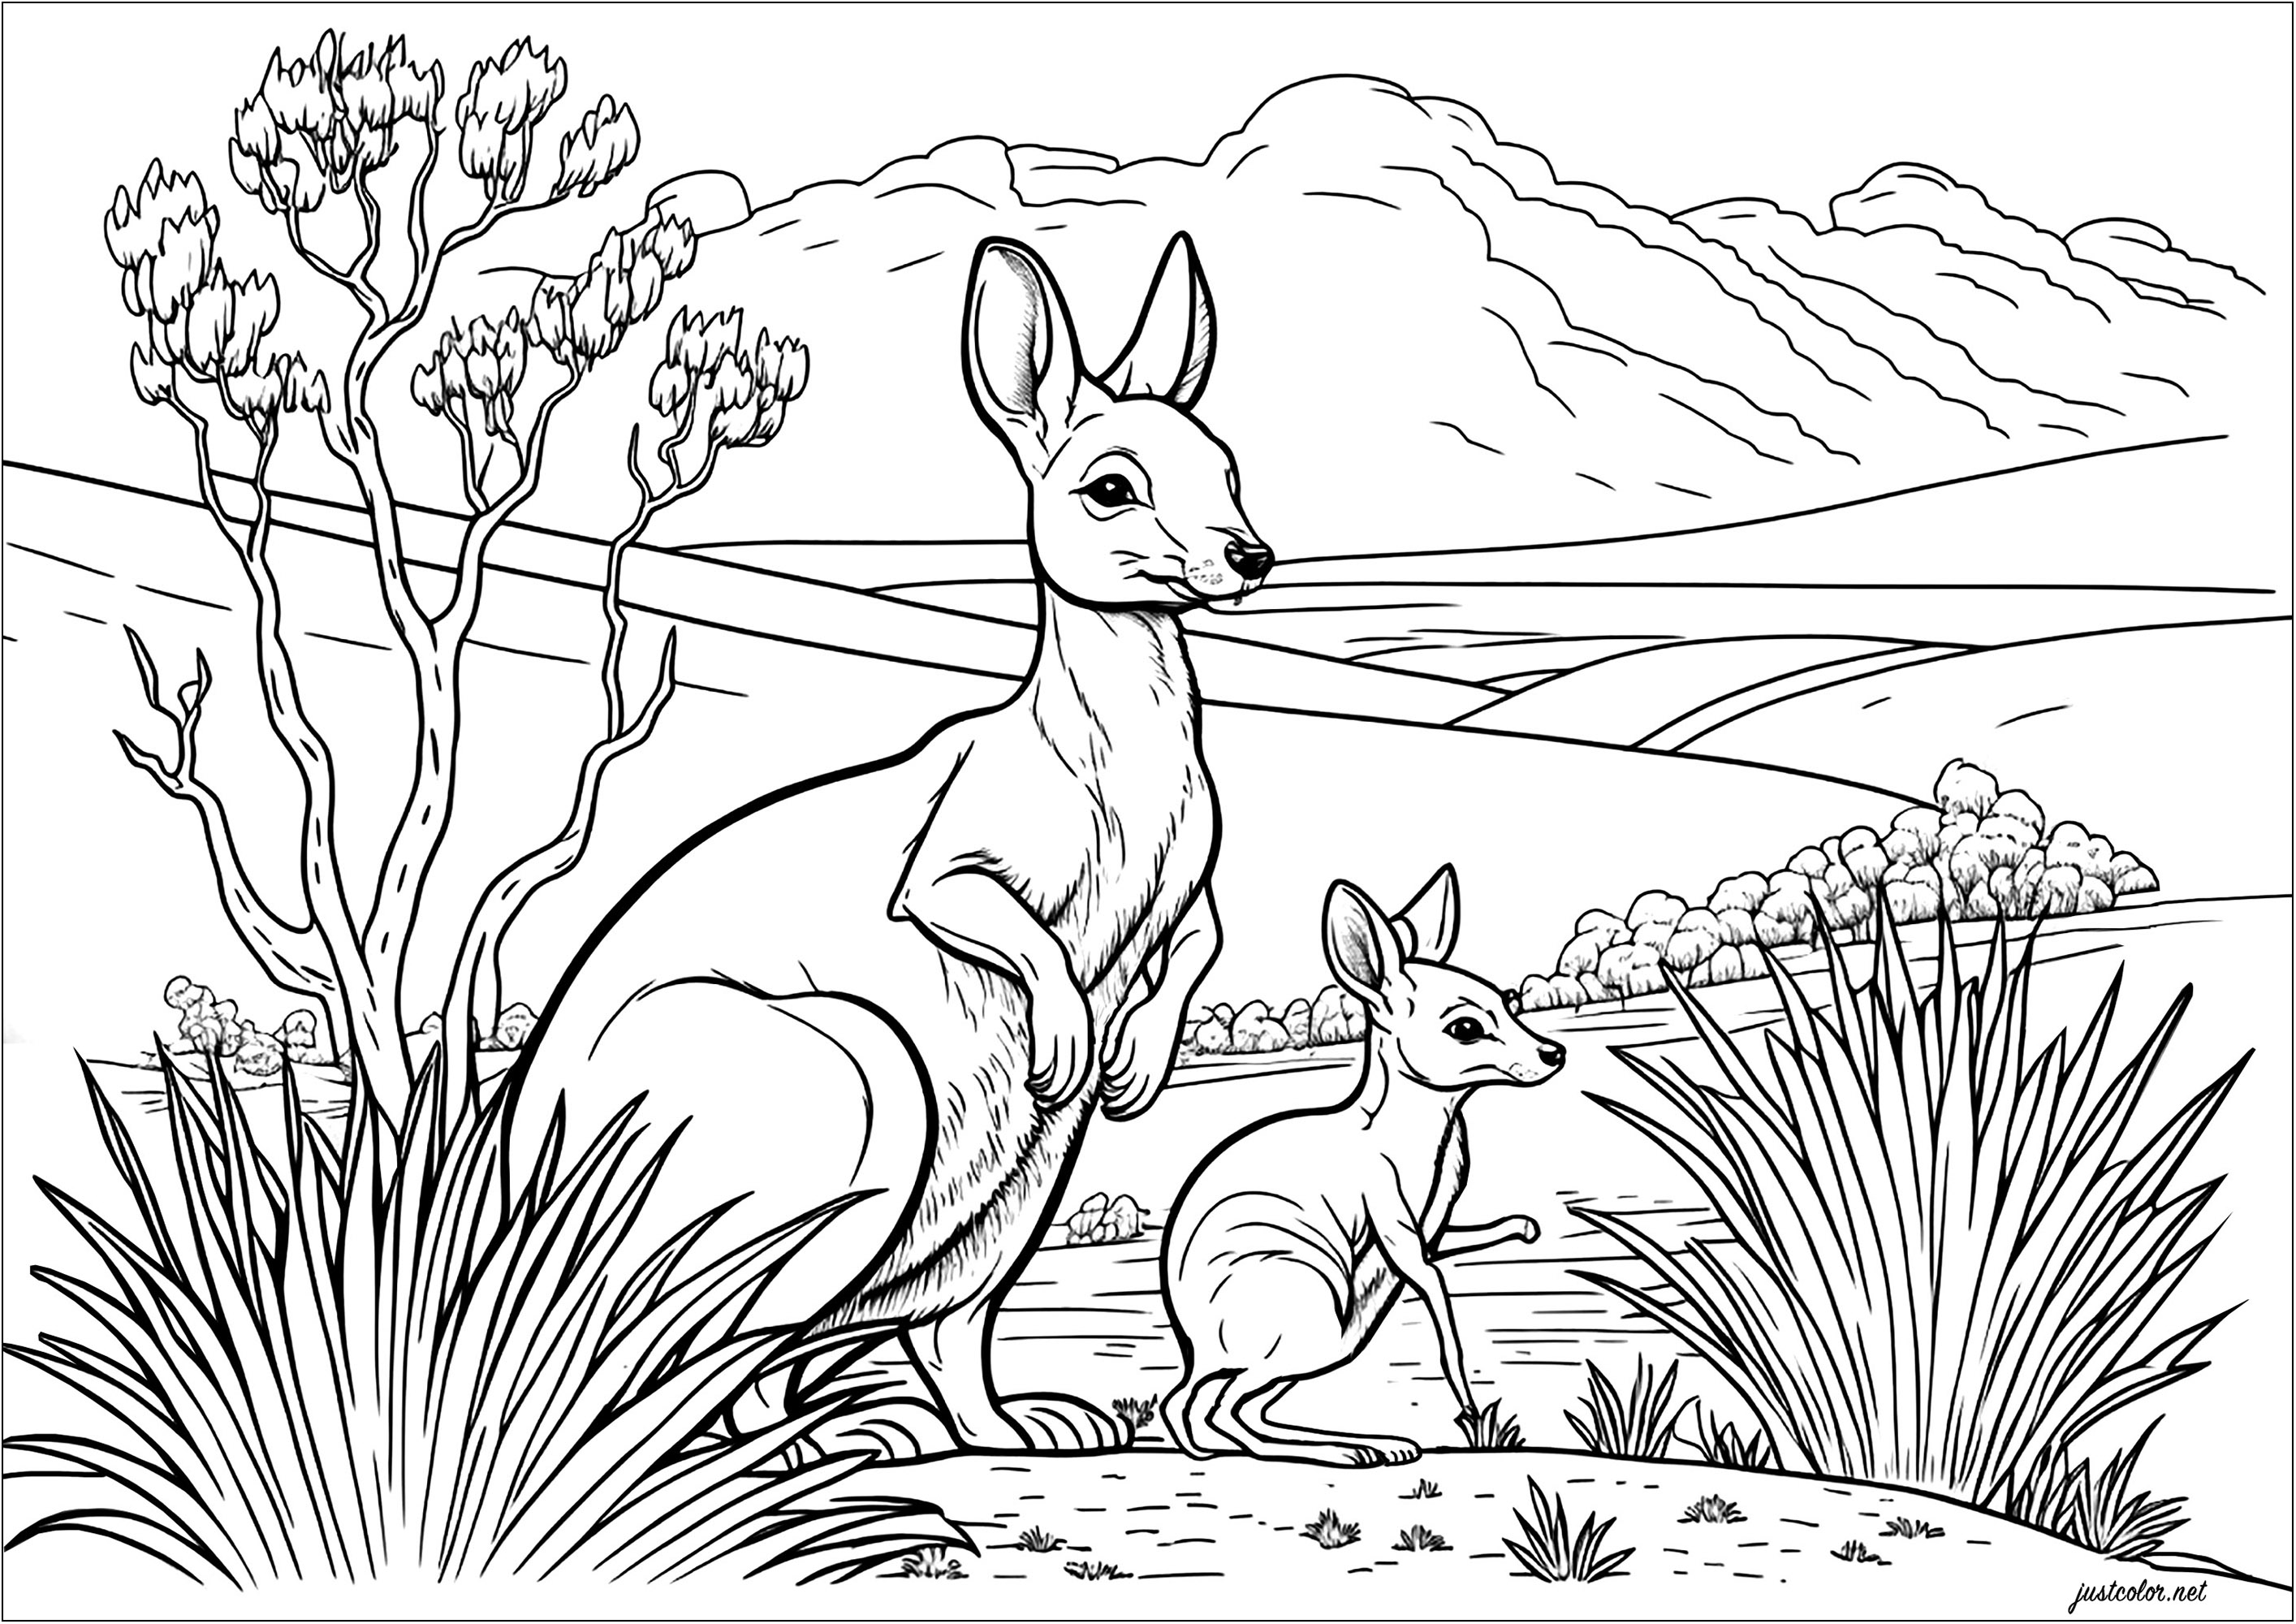 Male dieses Känguru-Muttertier und sein Junges aus. Erforsche die australische Wüstenlandschaft mit Kakteen und sonnigem Himmel, indem du deine Fantasie einsetzt, um diese Szene zum Leben zu erwecken. Lass deiner Kreativität freien Lauf und nimm an dem hüpfenden Abenteuer der beiden Kängurus teil.